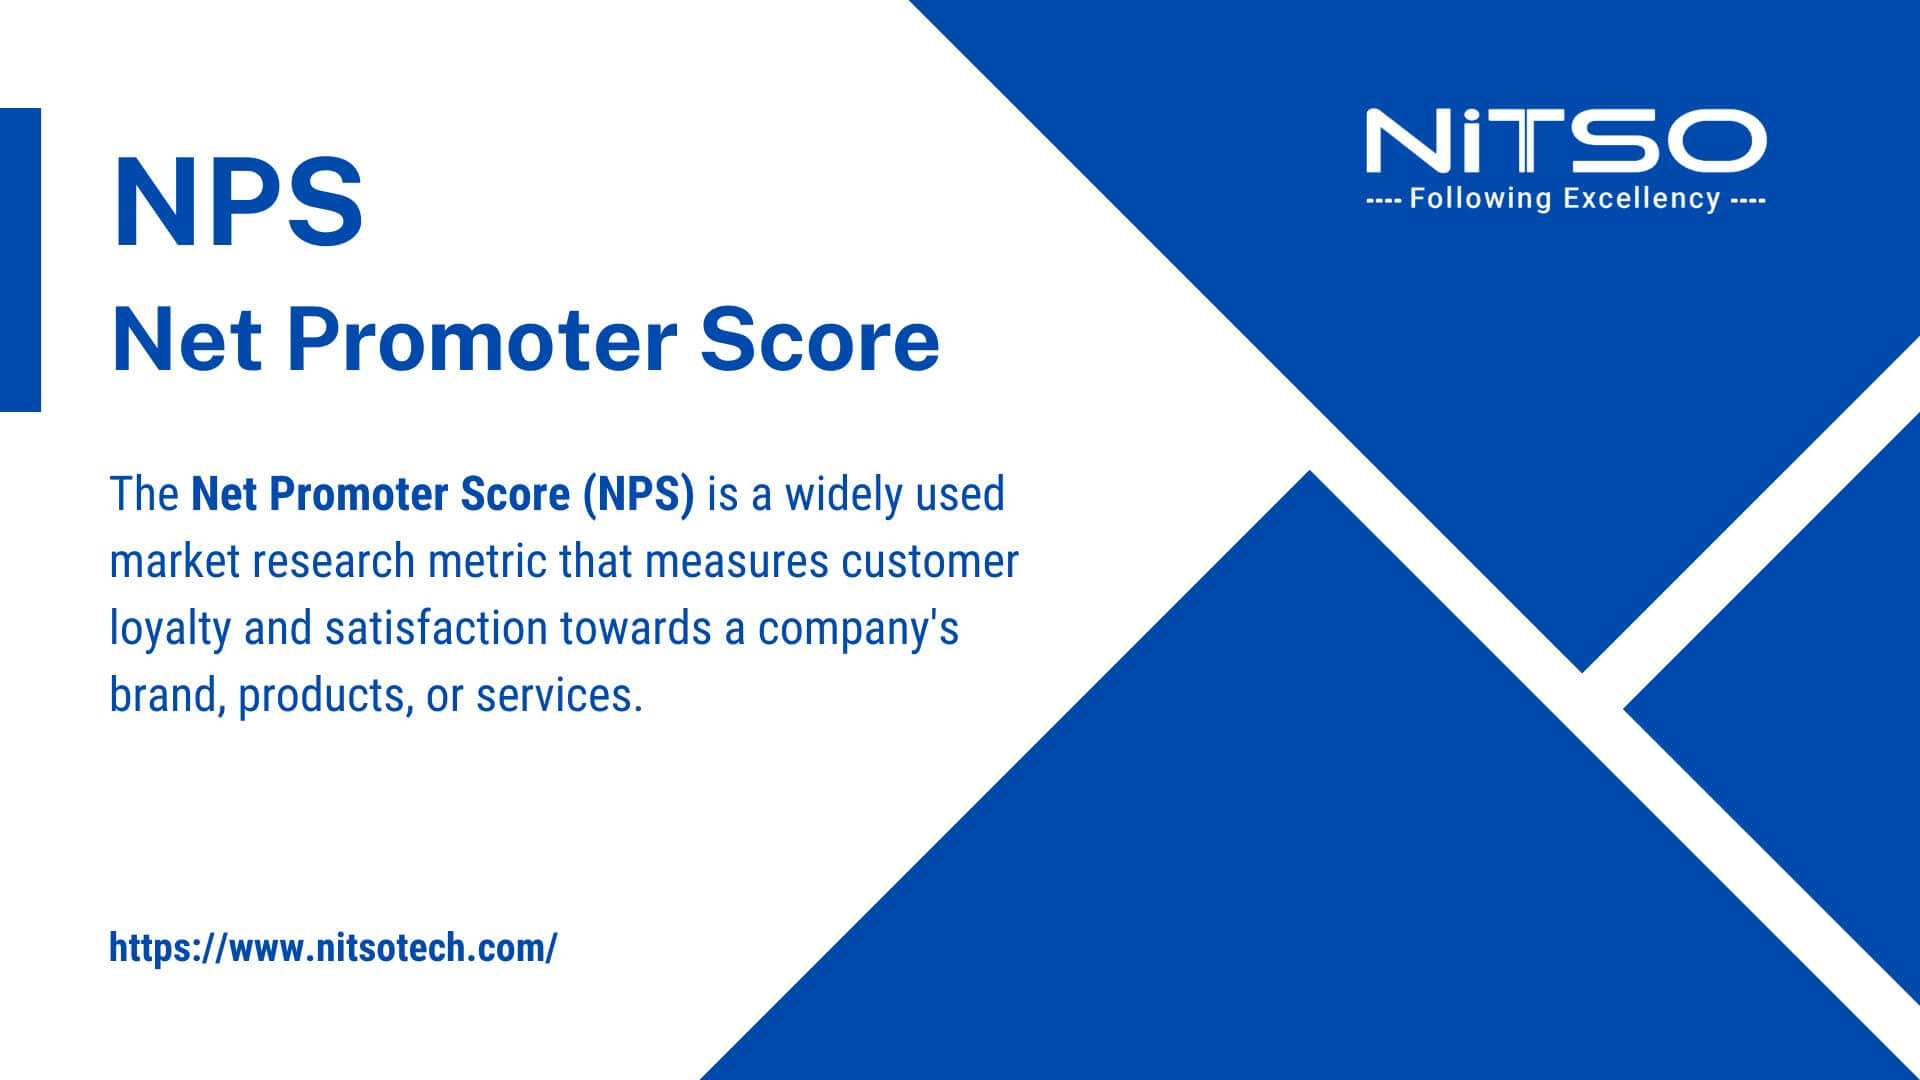 What Is Net Promoter Score (NPS)?